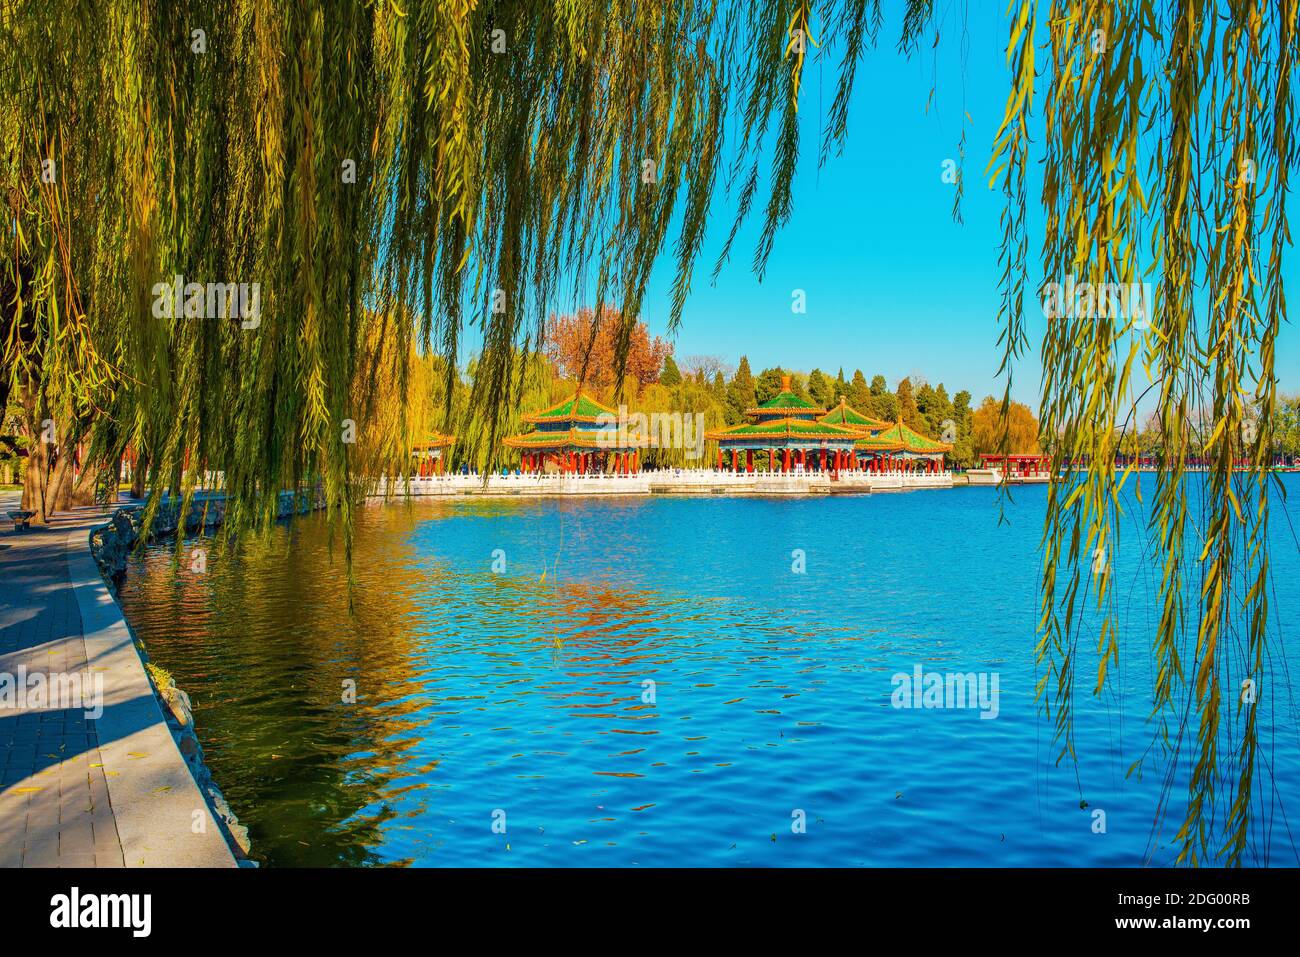 Splendida vista sul lago Beihai. Splendido paesaggio autunnale nel Parco Beihai. Asia, Cina, Pechino. Giorno di sole, cielo blu chiaro. Calda serata d'autunno. Foto Stock